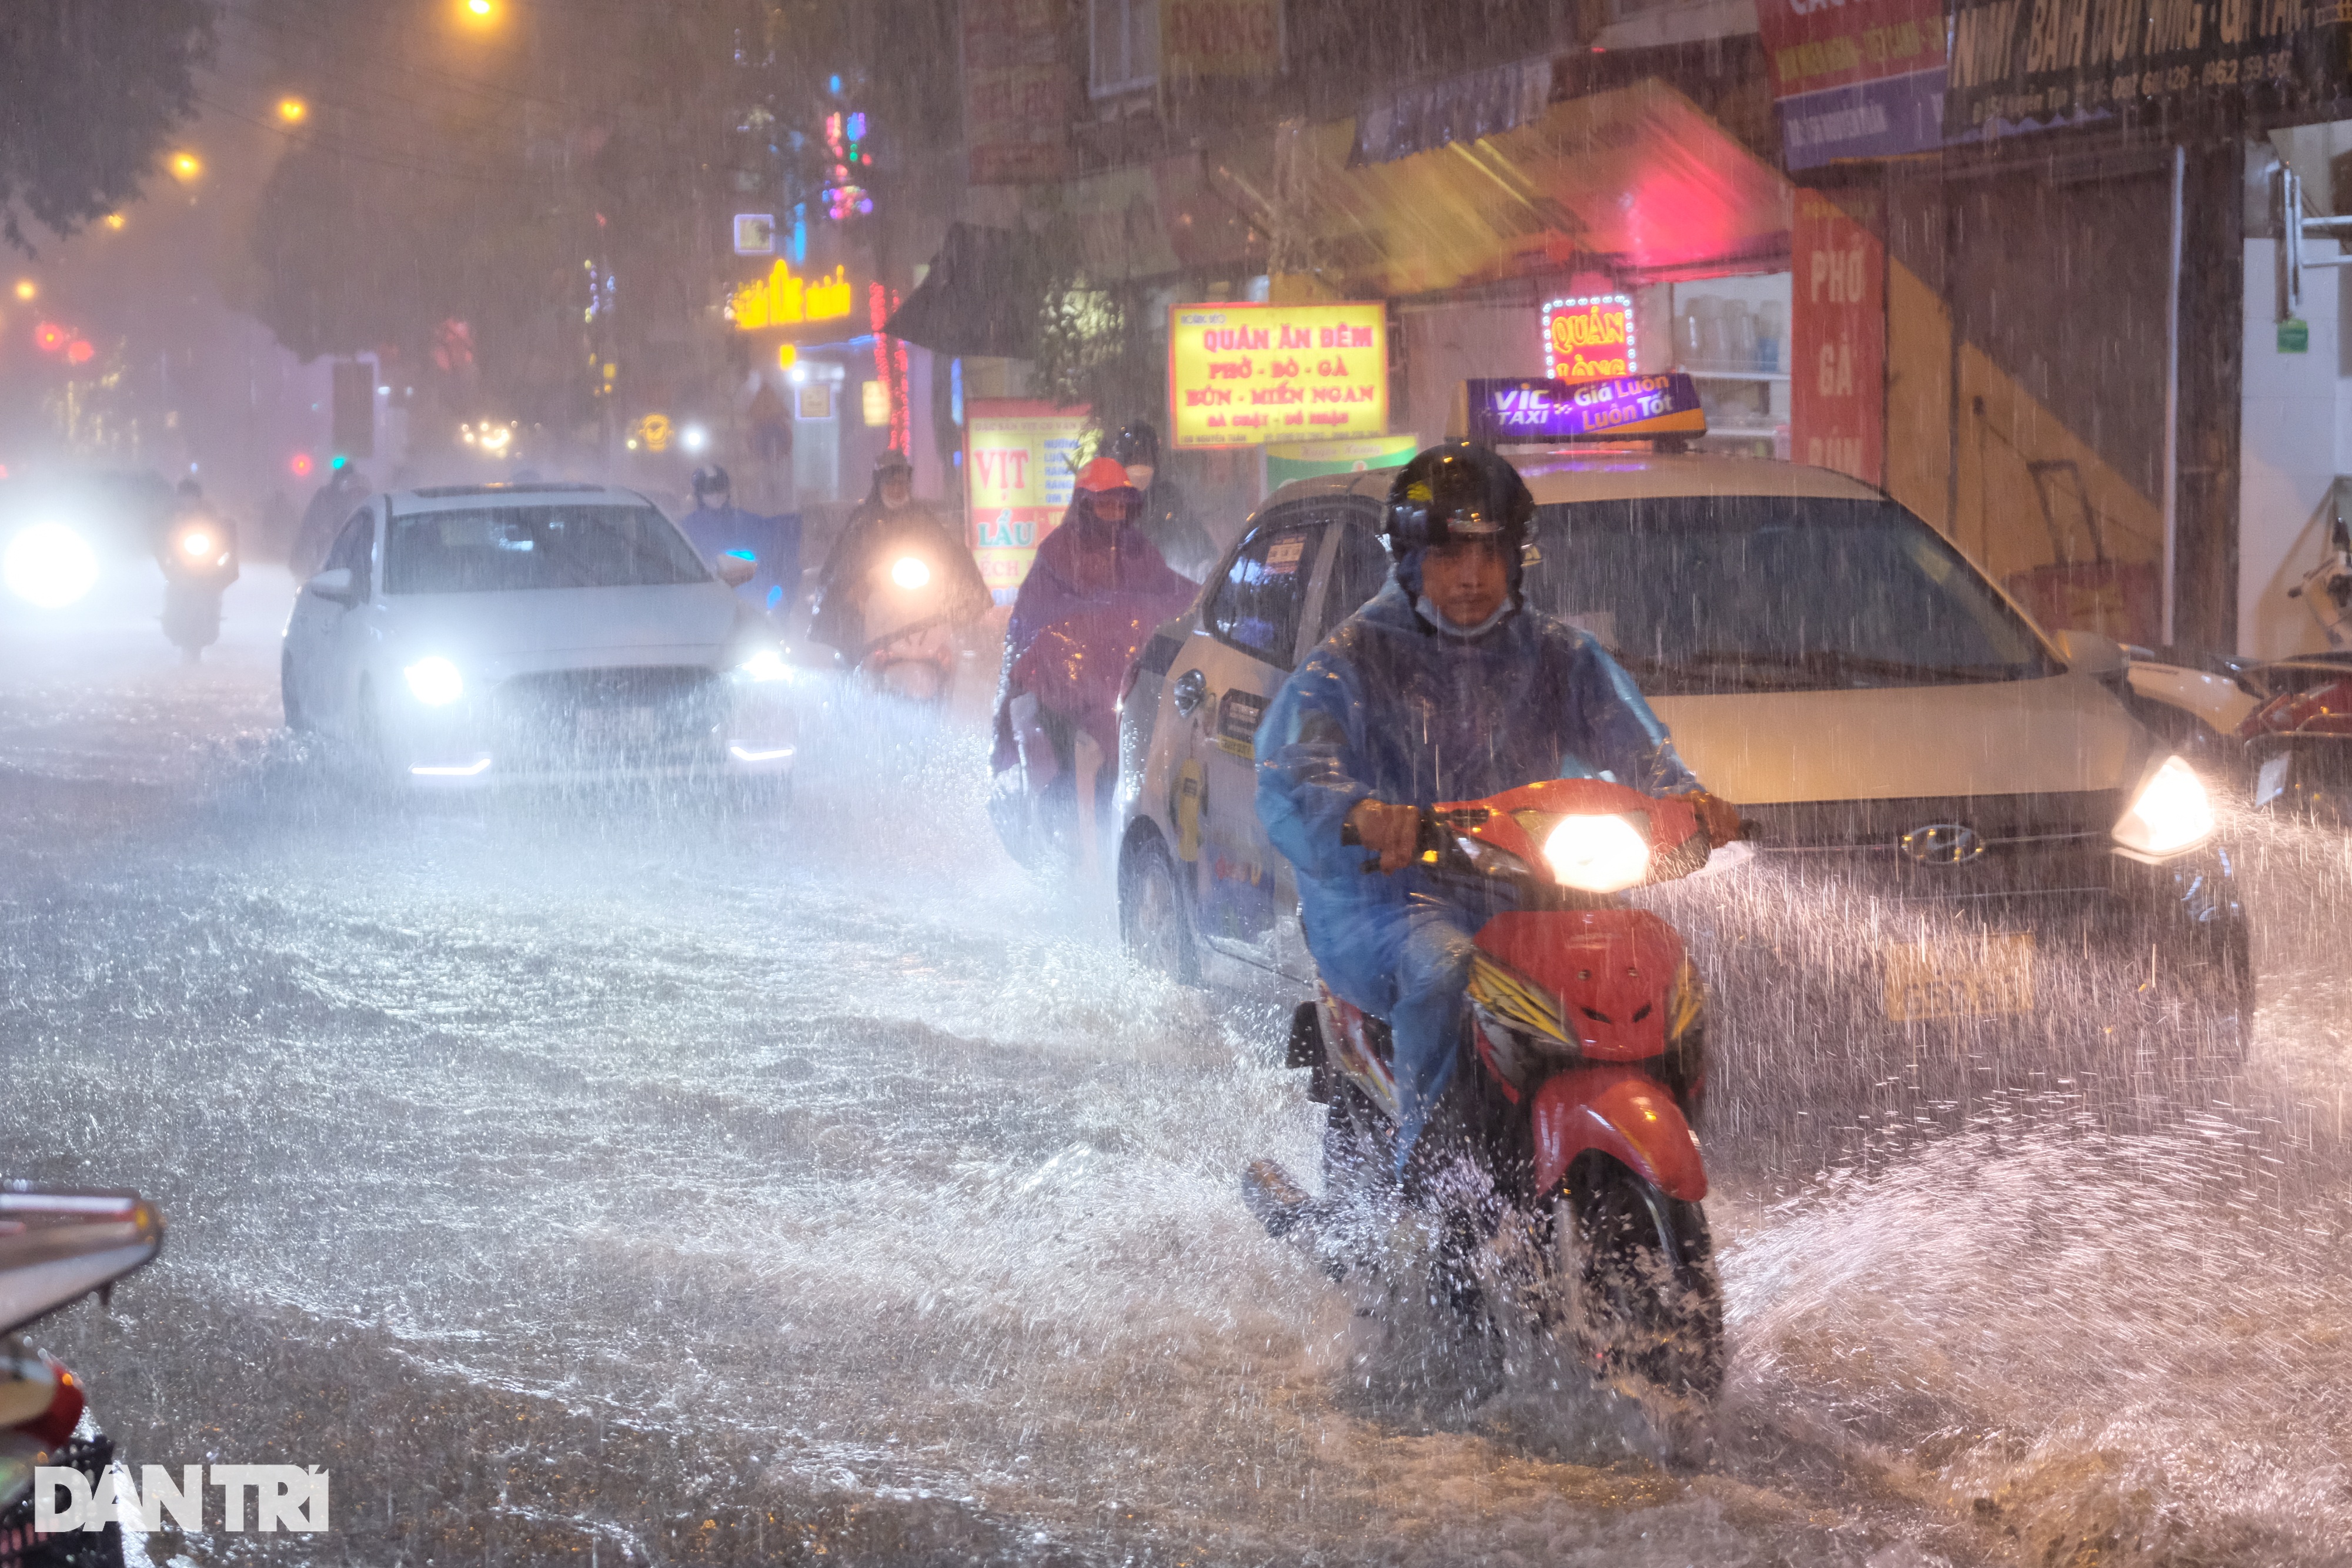 Cơn mưa lớn sầm sập đổ xuống, người Hà Nội chôn chân trên đường ngập - 7